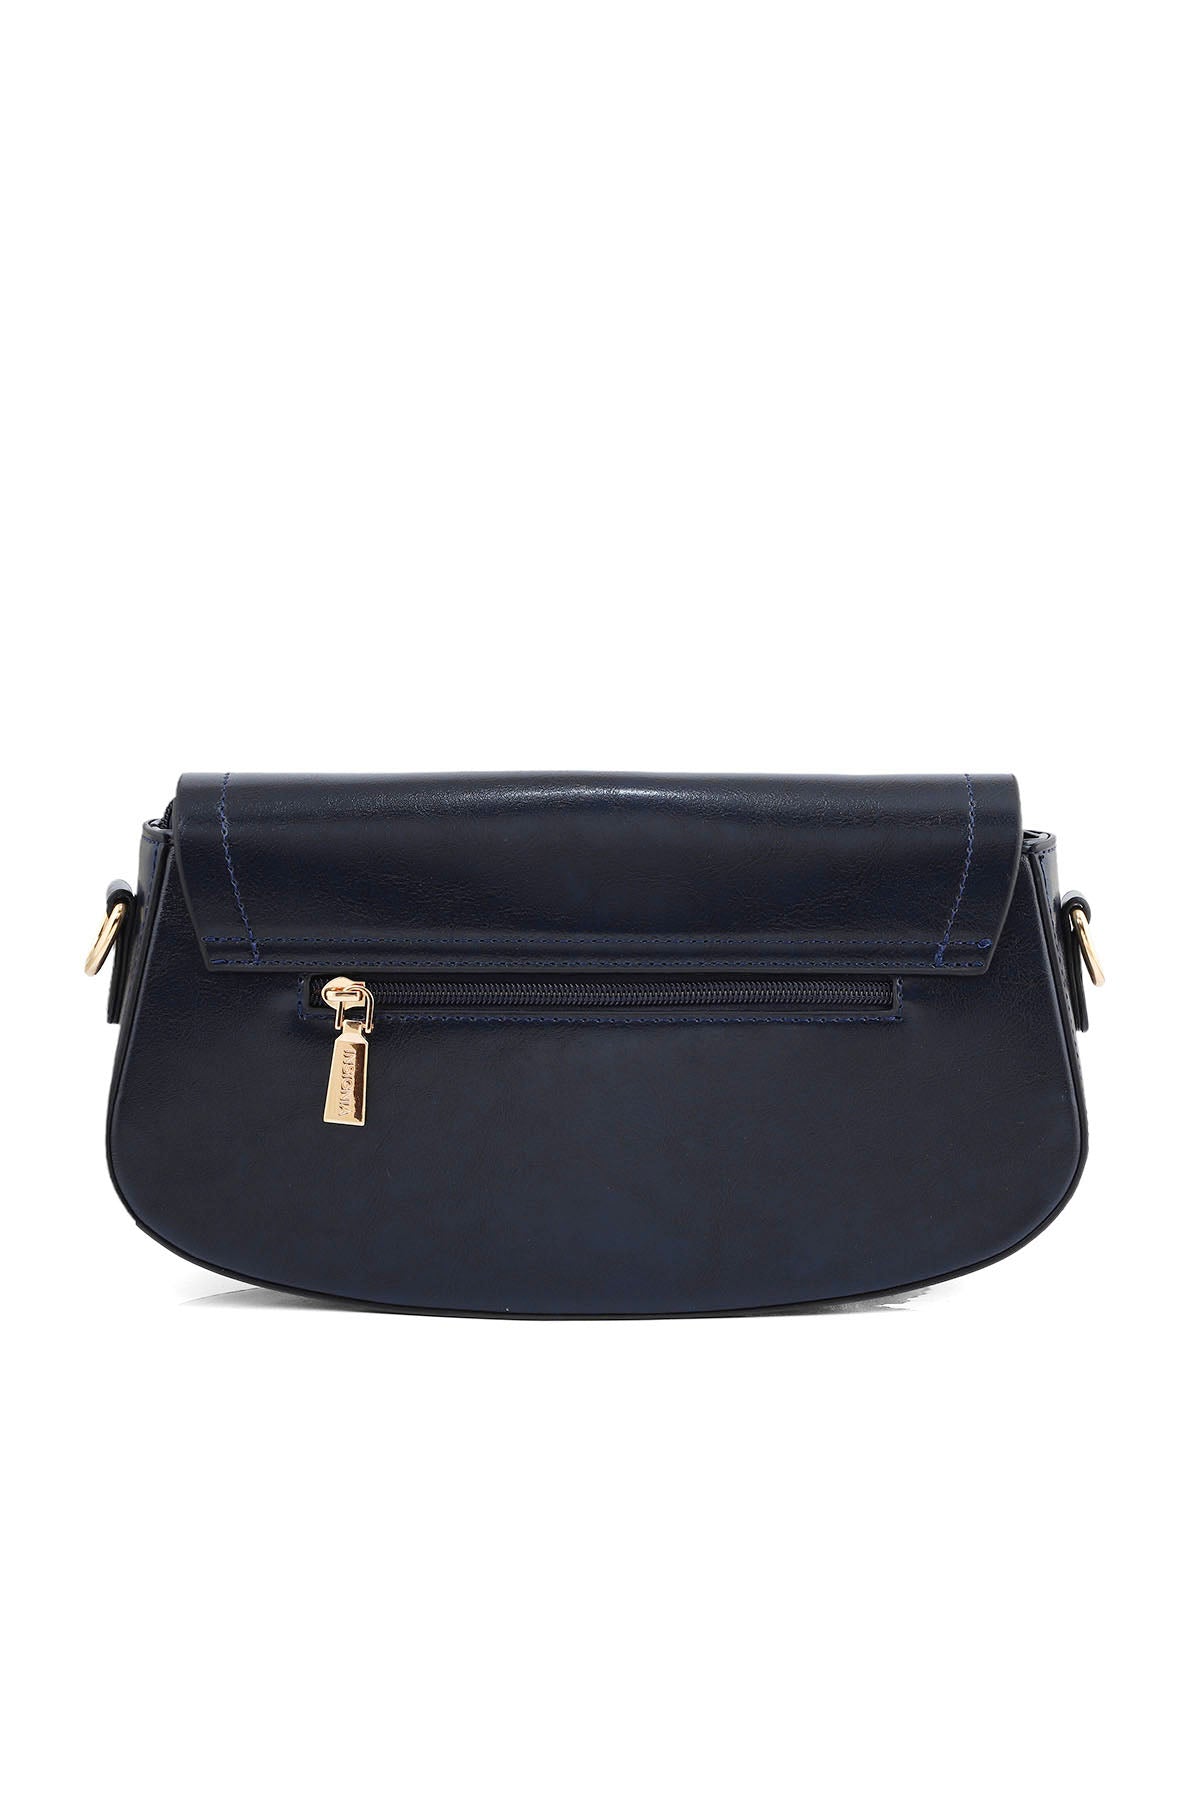 Baguette Shoulder Bags B14976-Blue